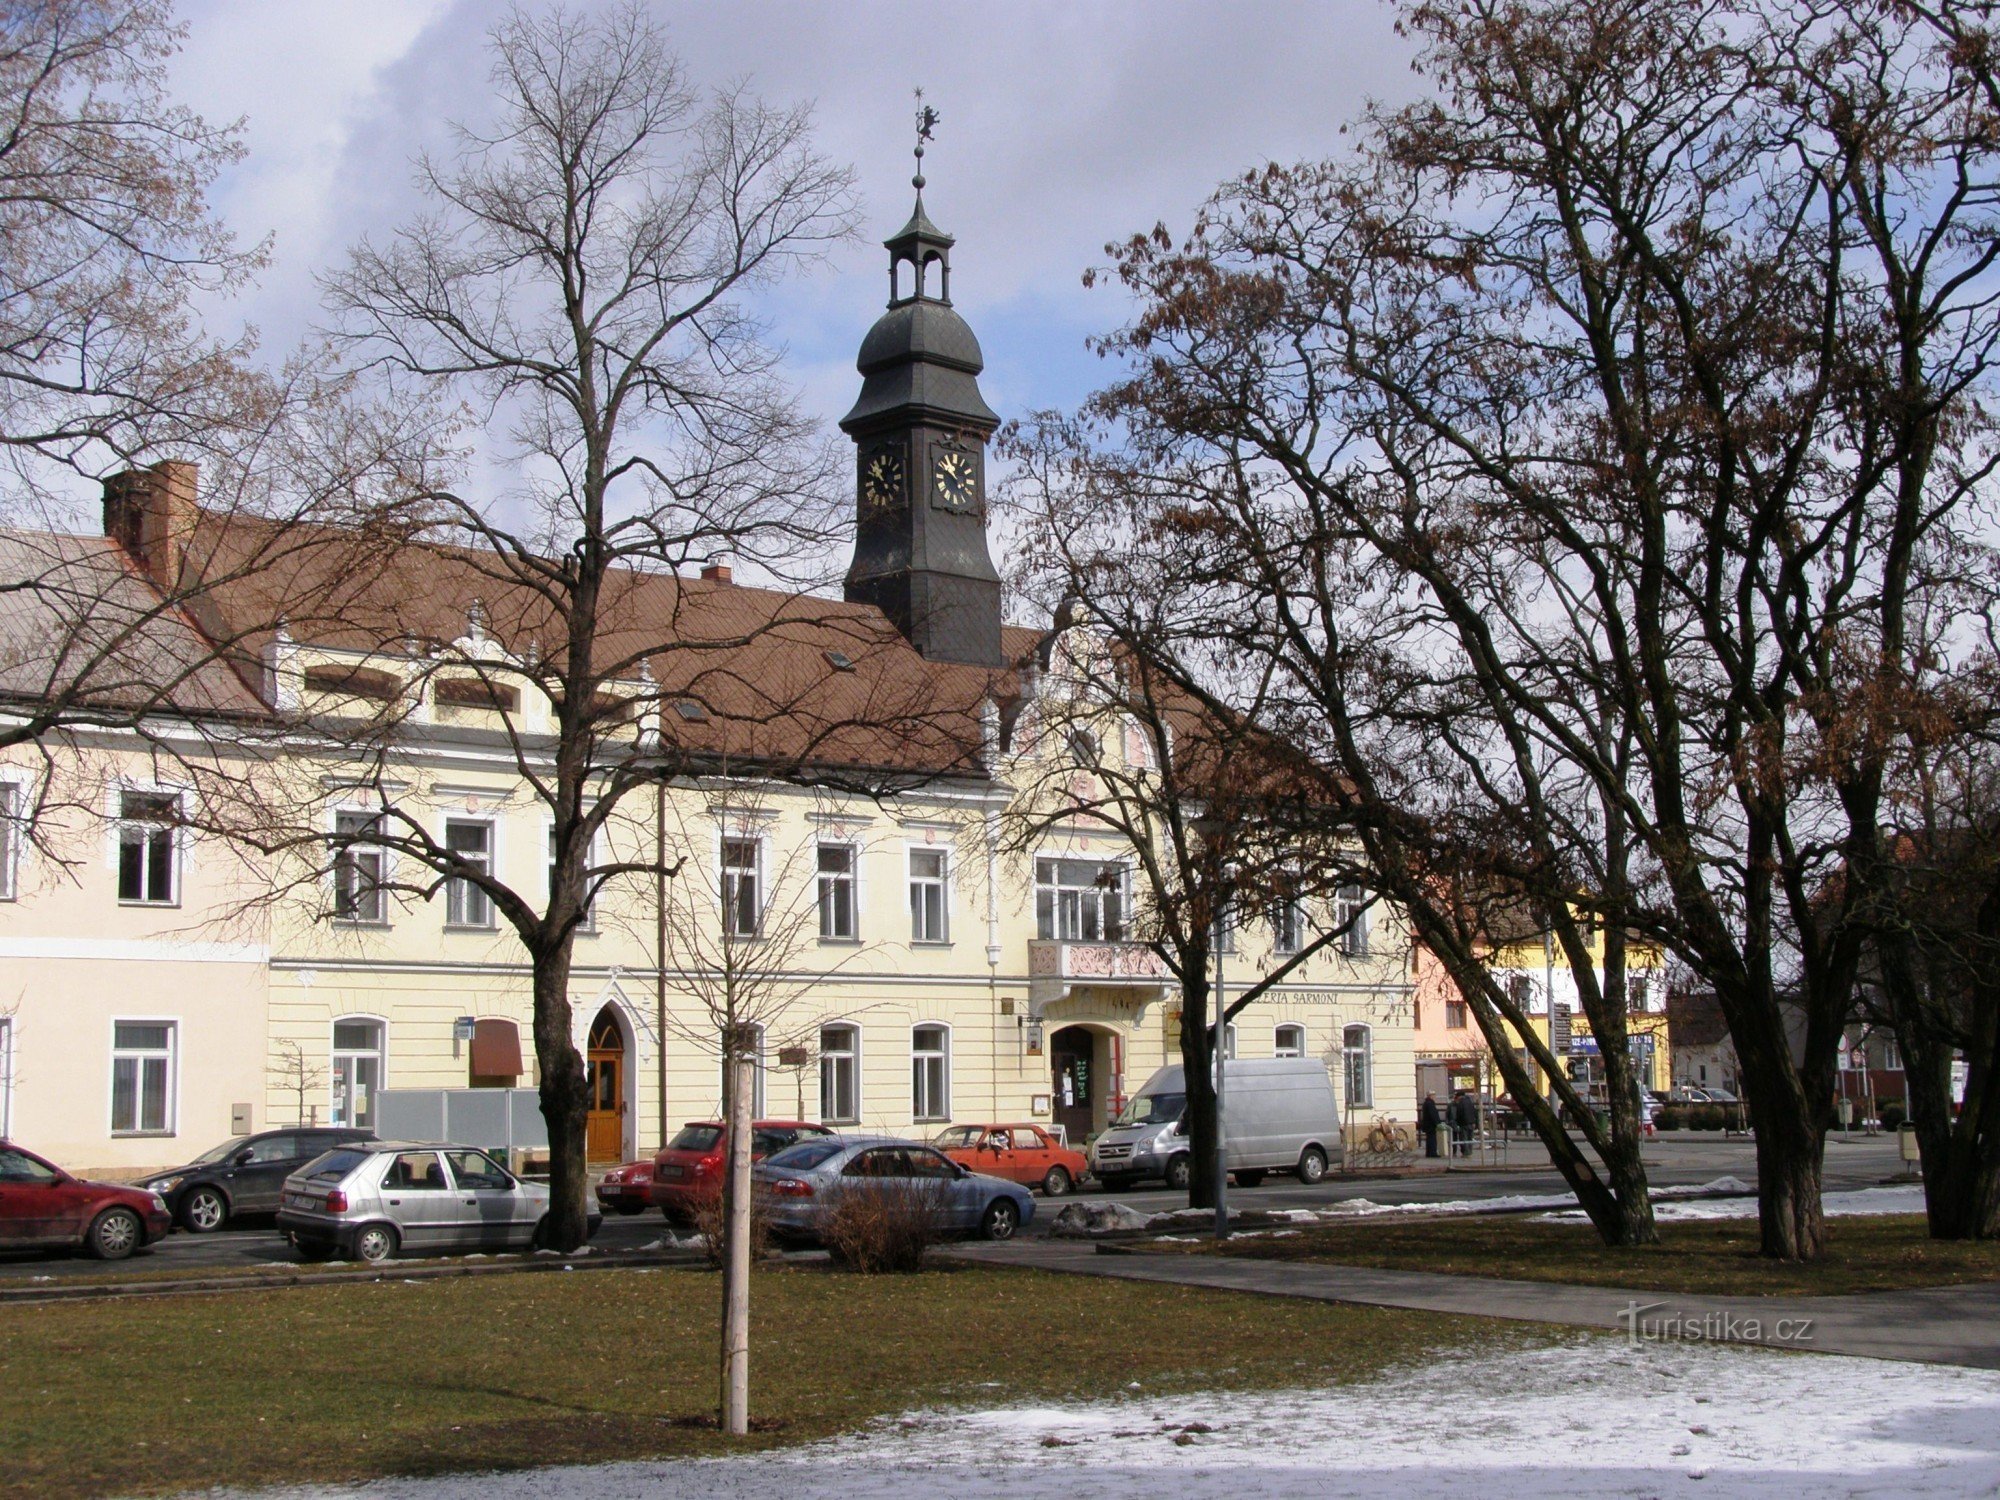 Thị trấn Králové